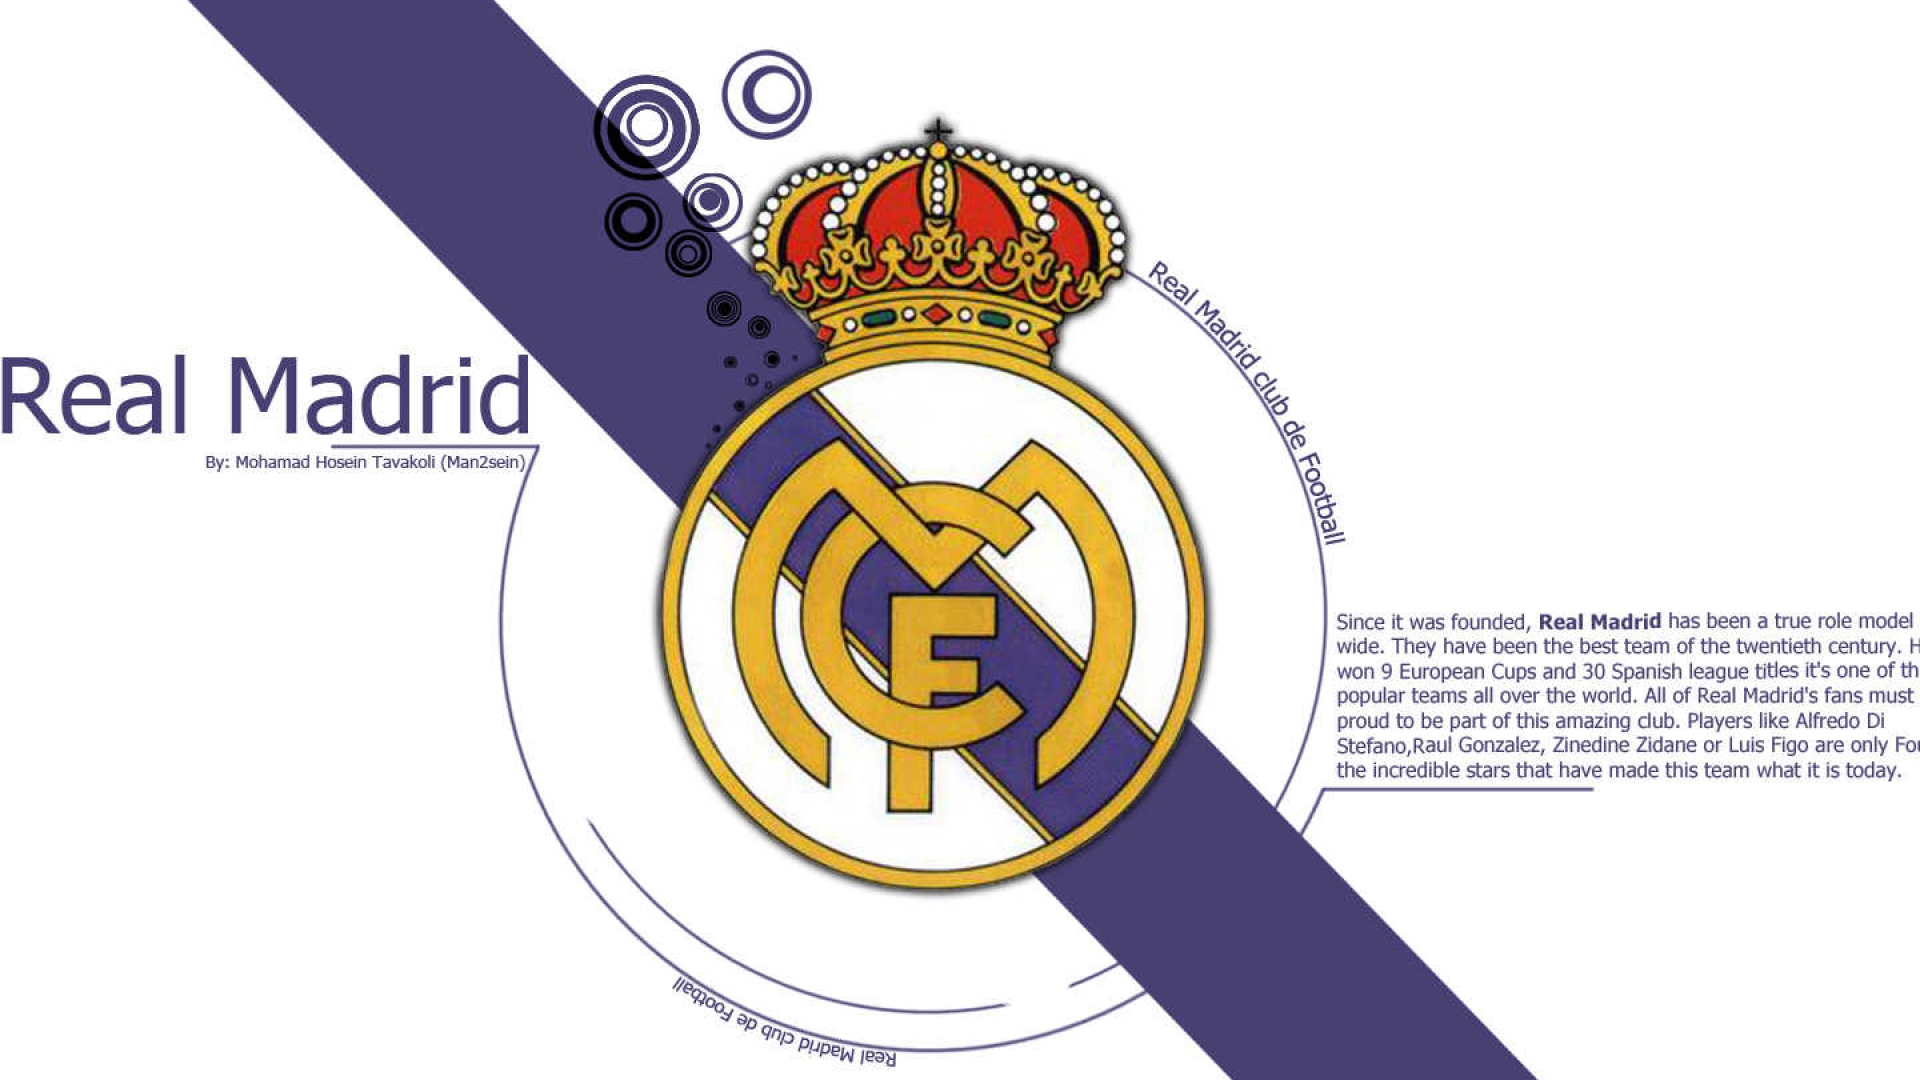         Real Madrid